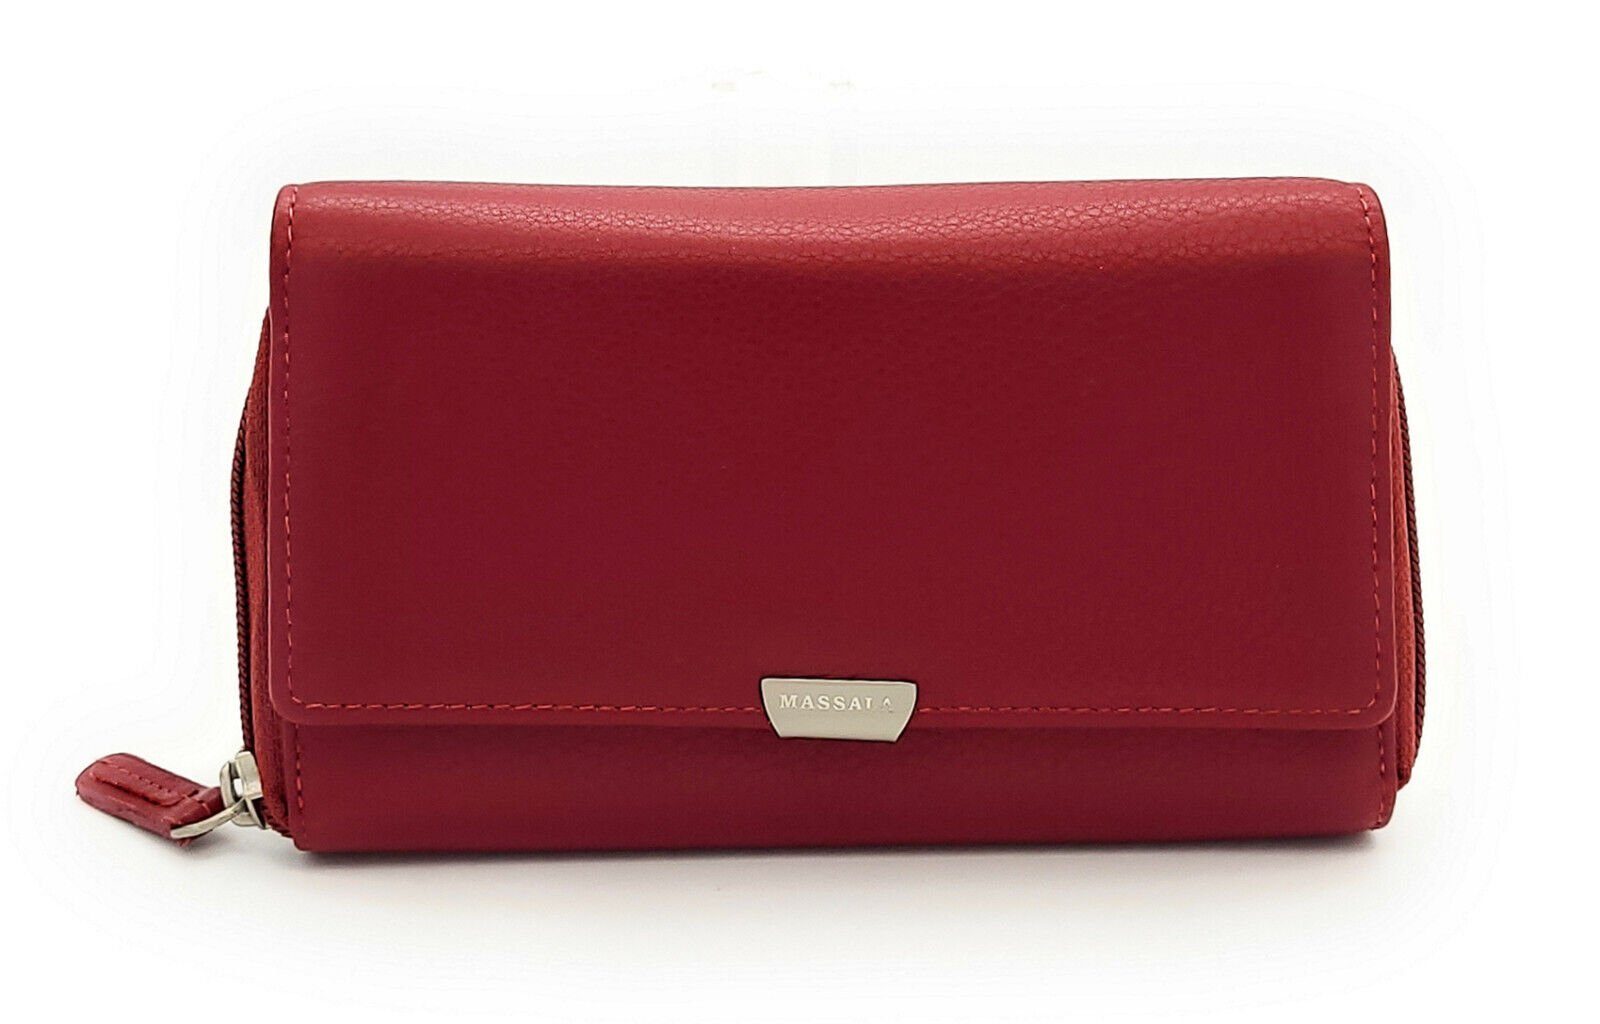 JOCKEY CLUB Geldbörse echt Leder Damen Portemonnaie mit RFID Schutz "Massala", vollnarbiges weiches Rindleder, rot cherry